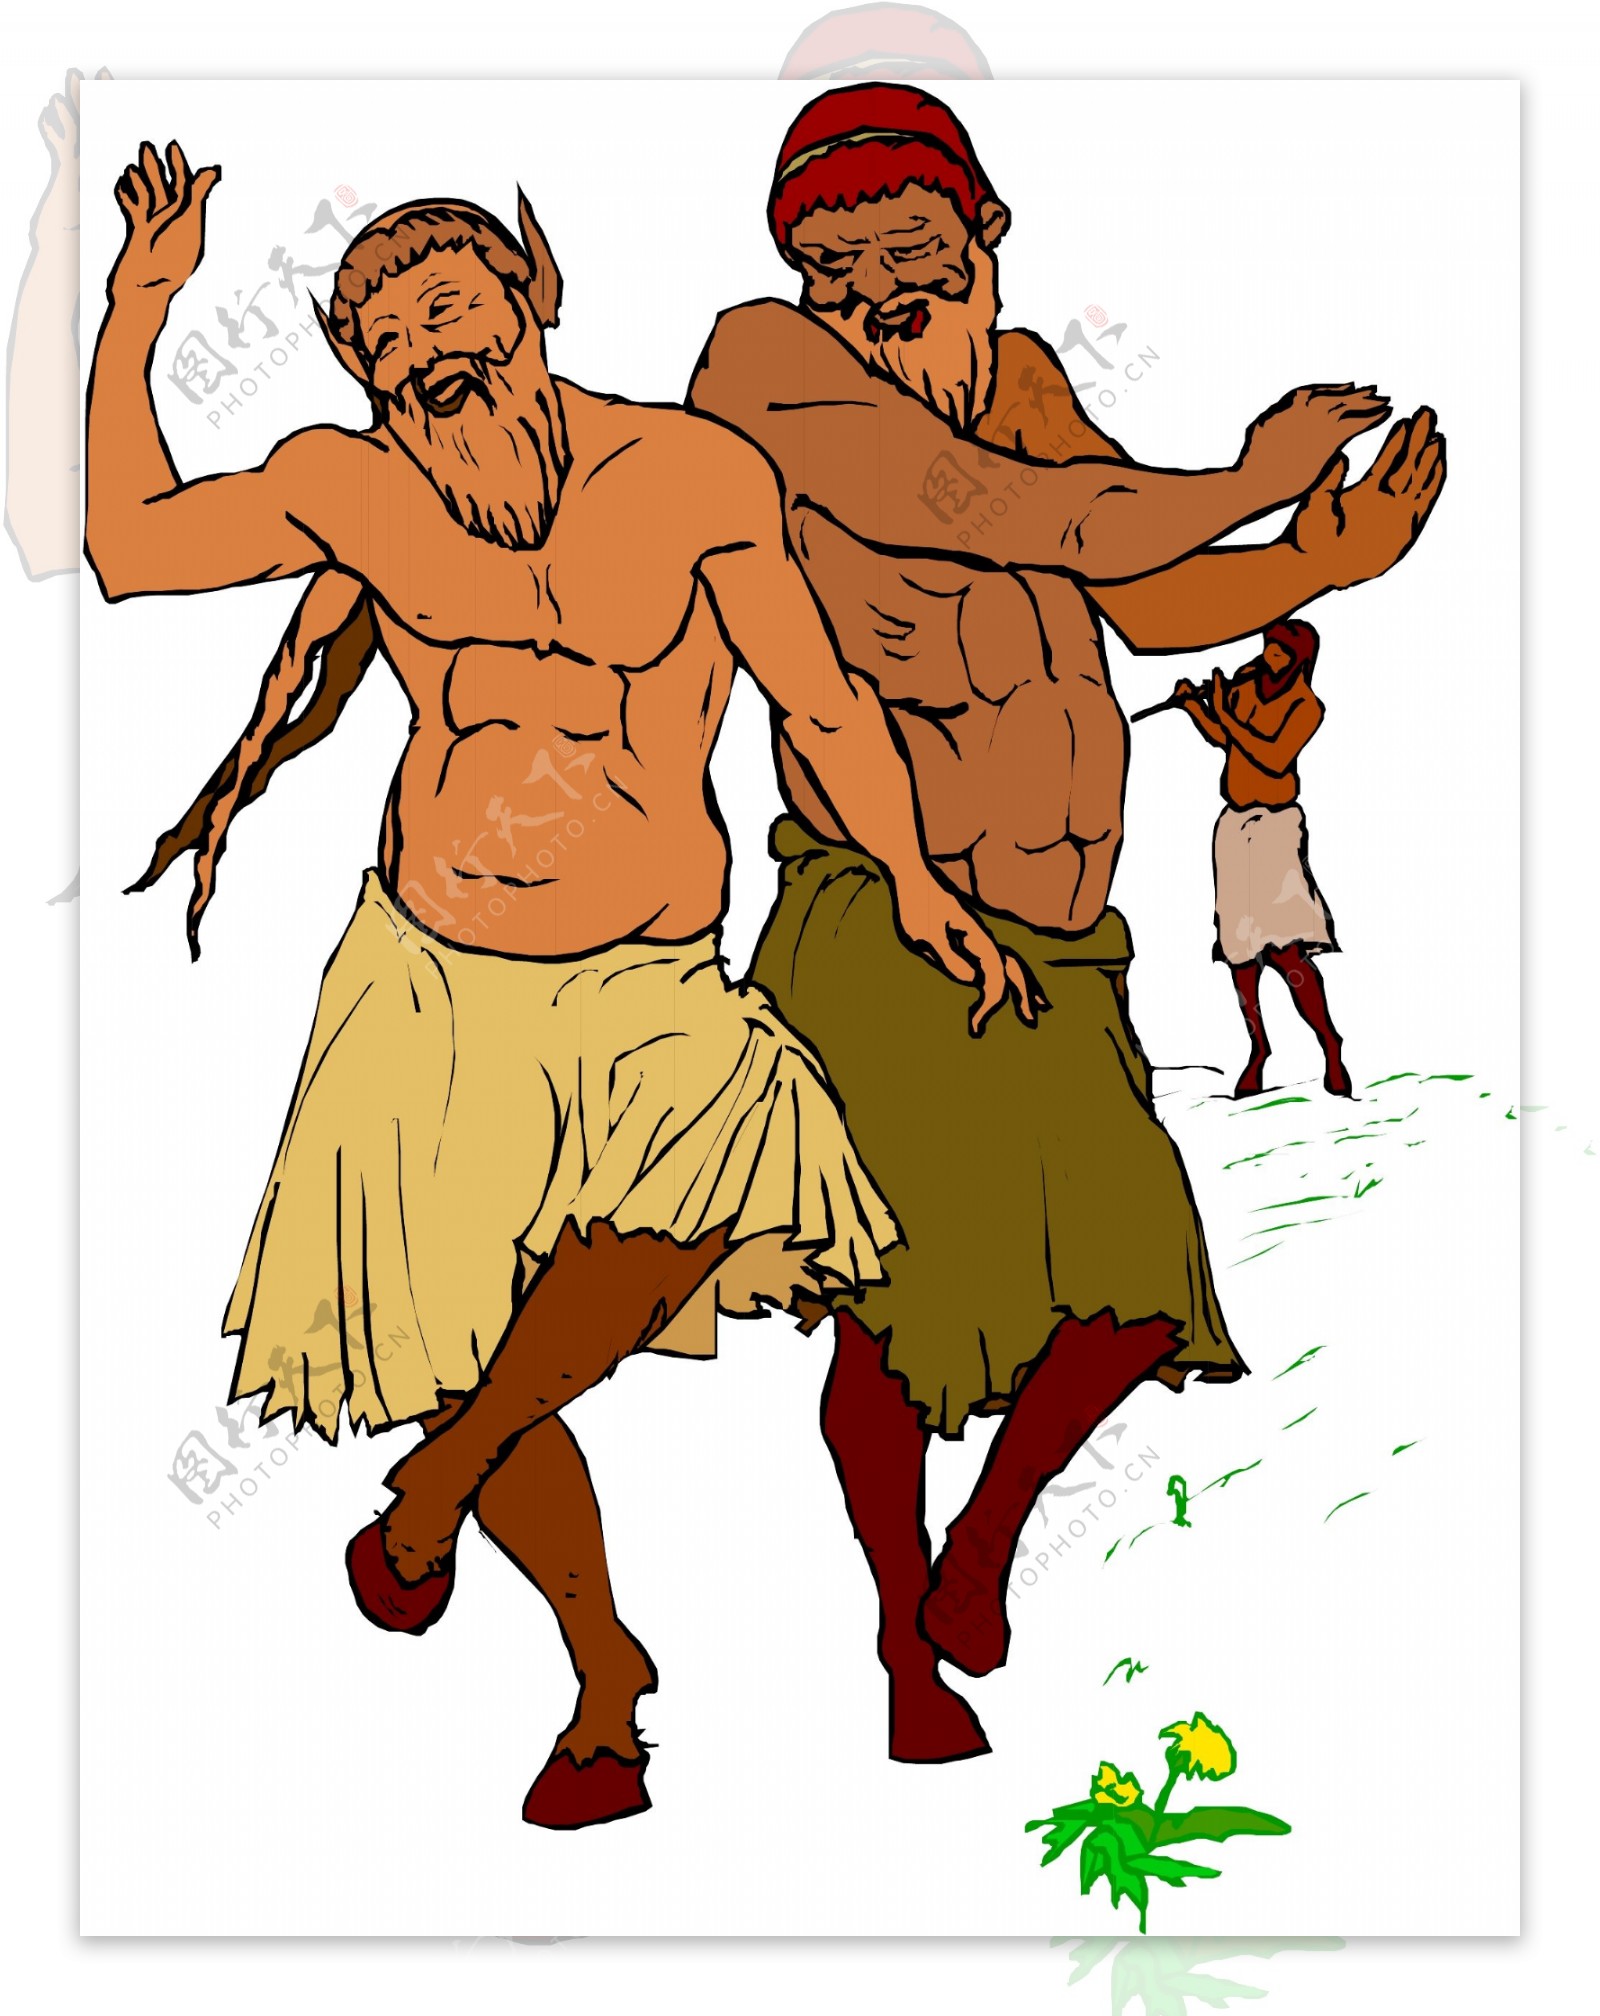 两个古代希腊人在跳舞